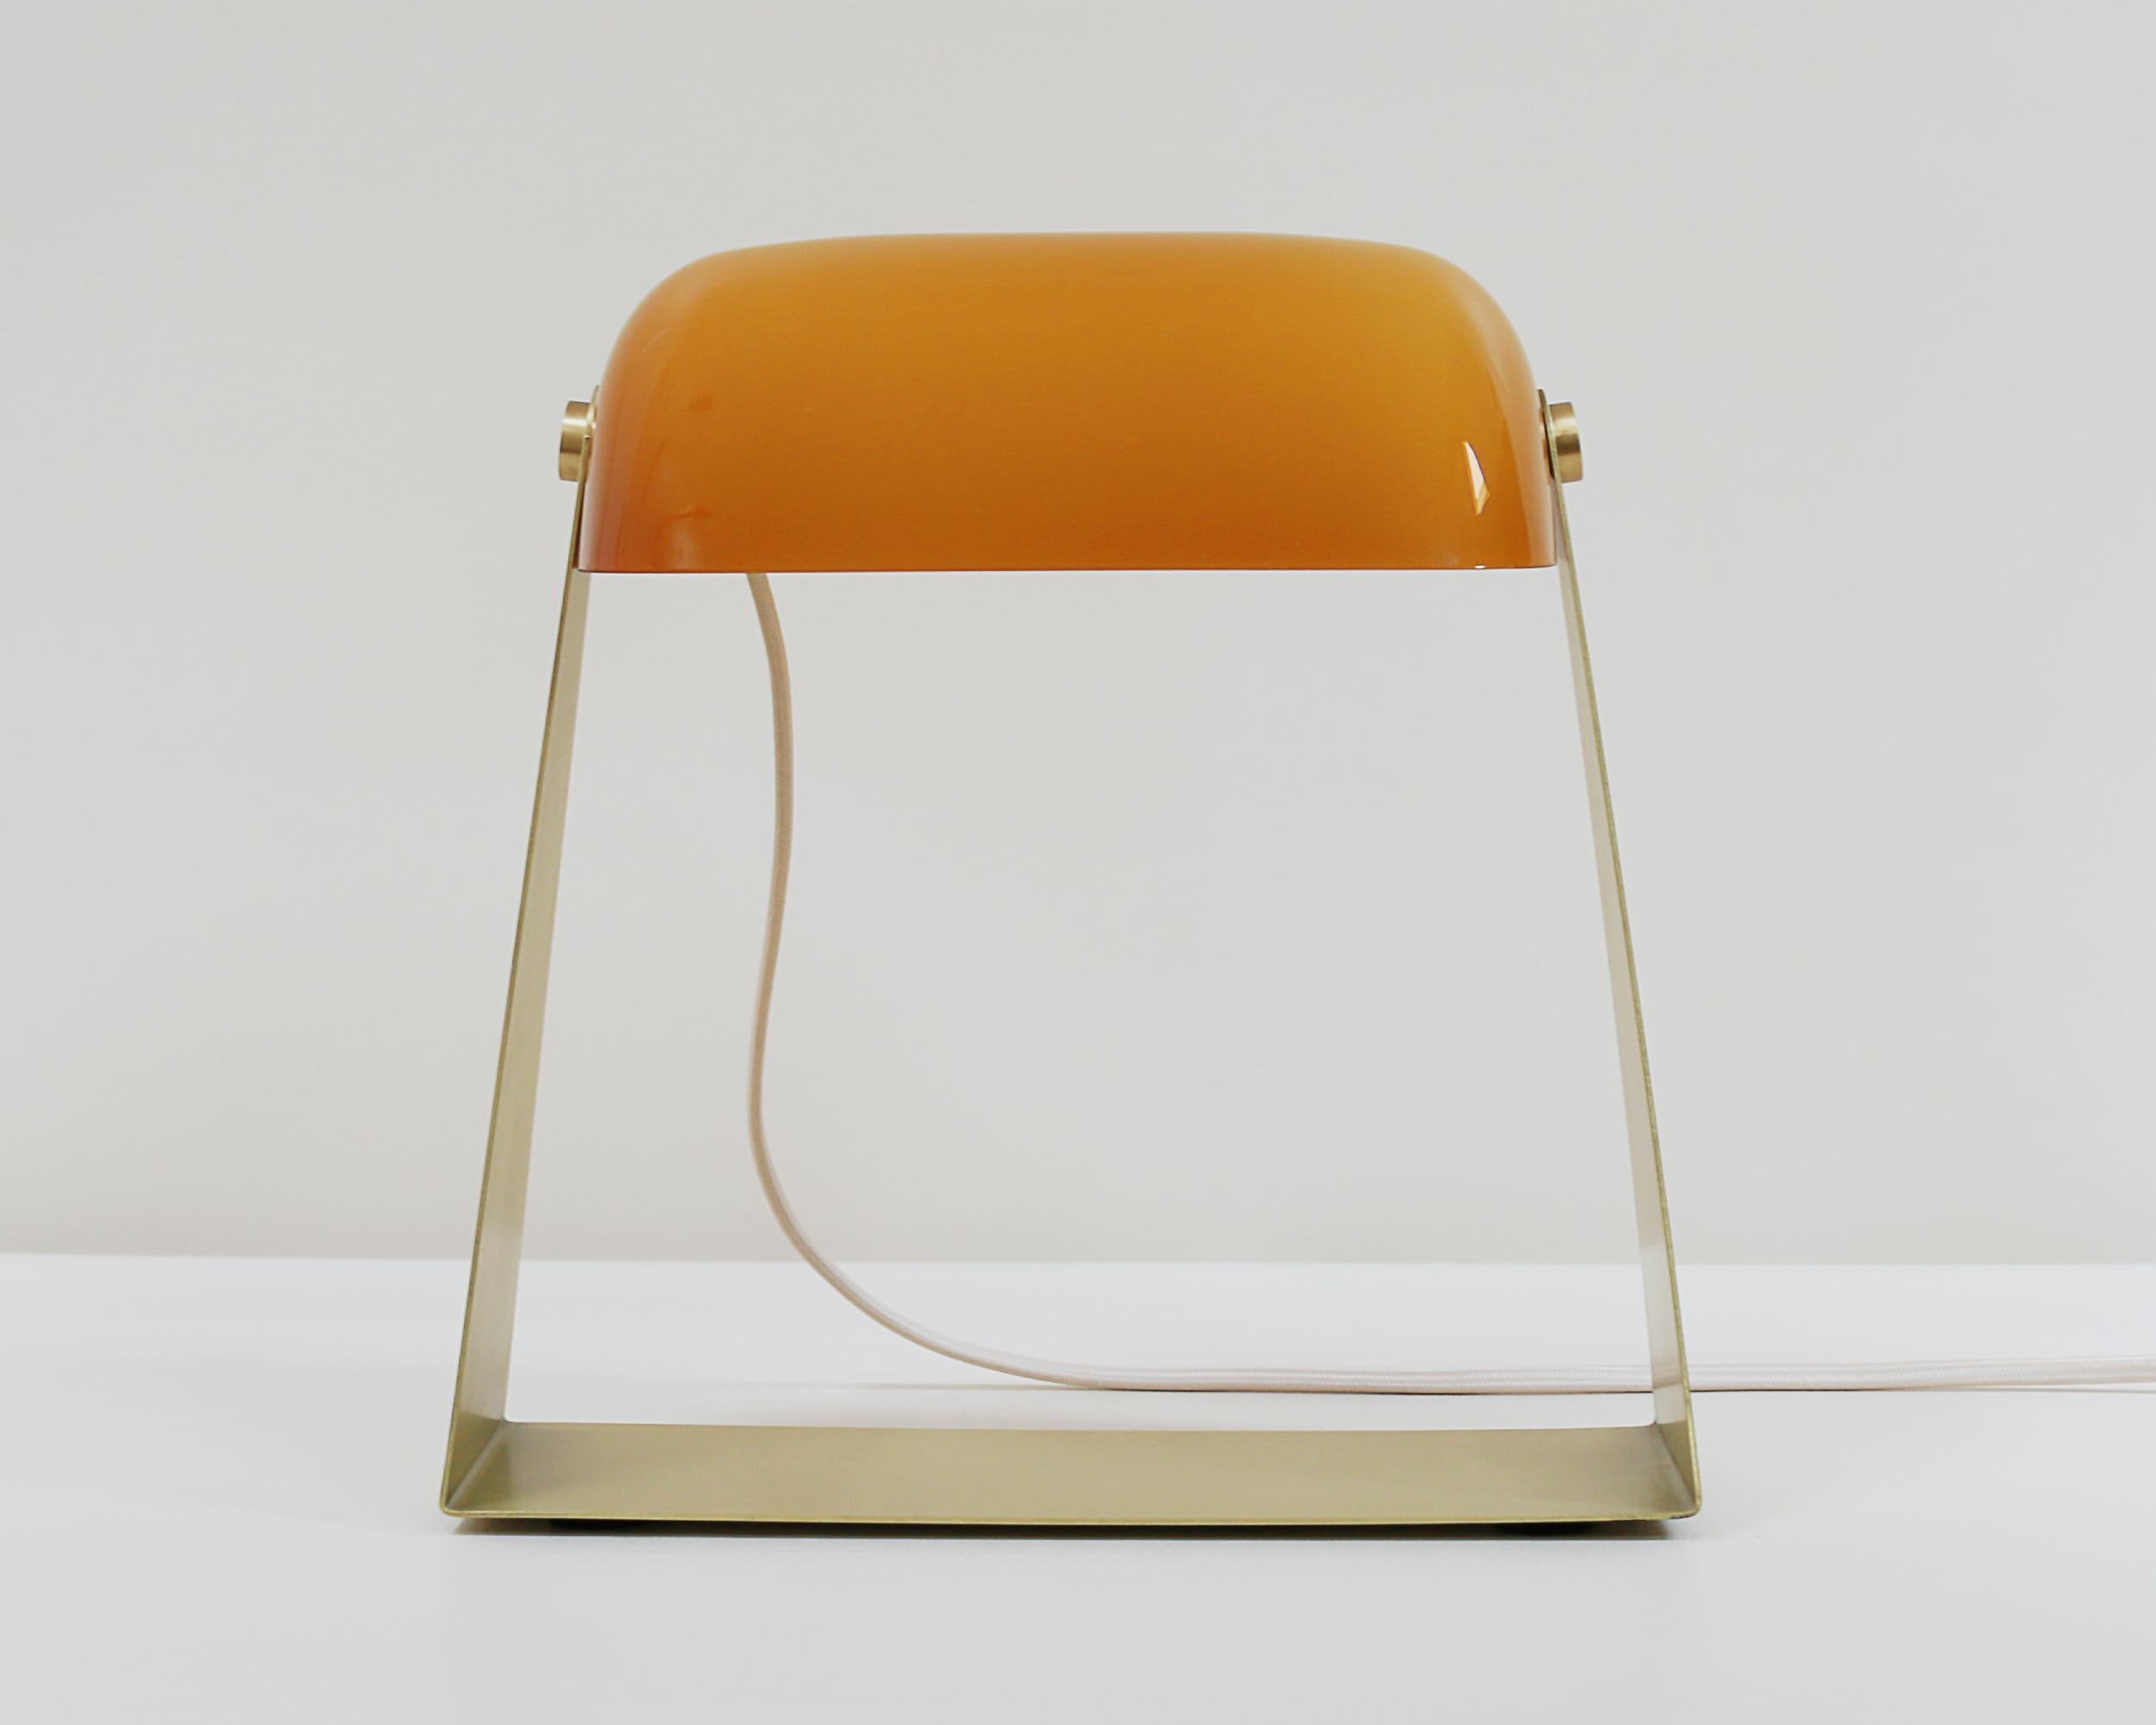 Thews est une lampe de table en laiton robuste qui réimagine une esthétique du début du XXe siècle. Le compagnon idéal sur votre étagère, votre bureau ou votre table de chevet.

Chaque cadre est brossé, plié et laqué à la main dans notre atelier.